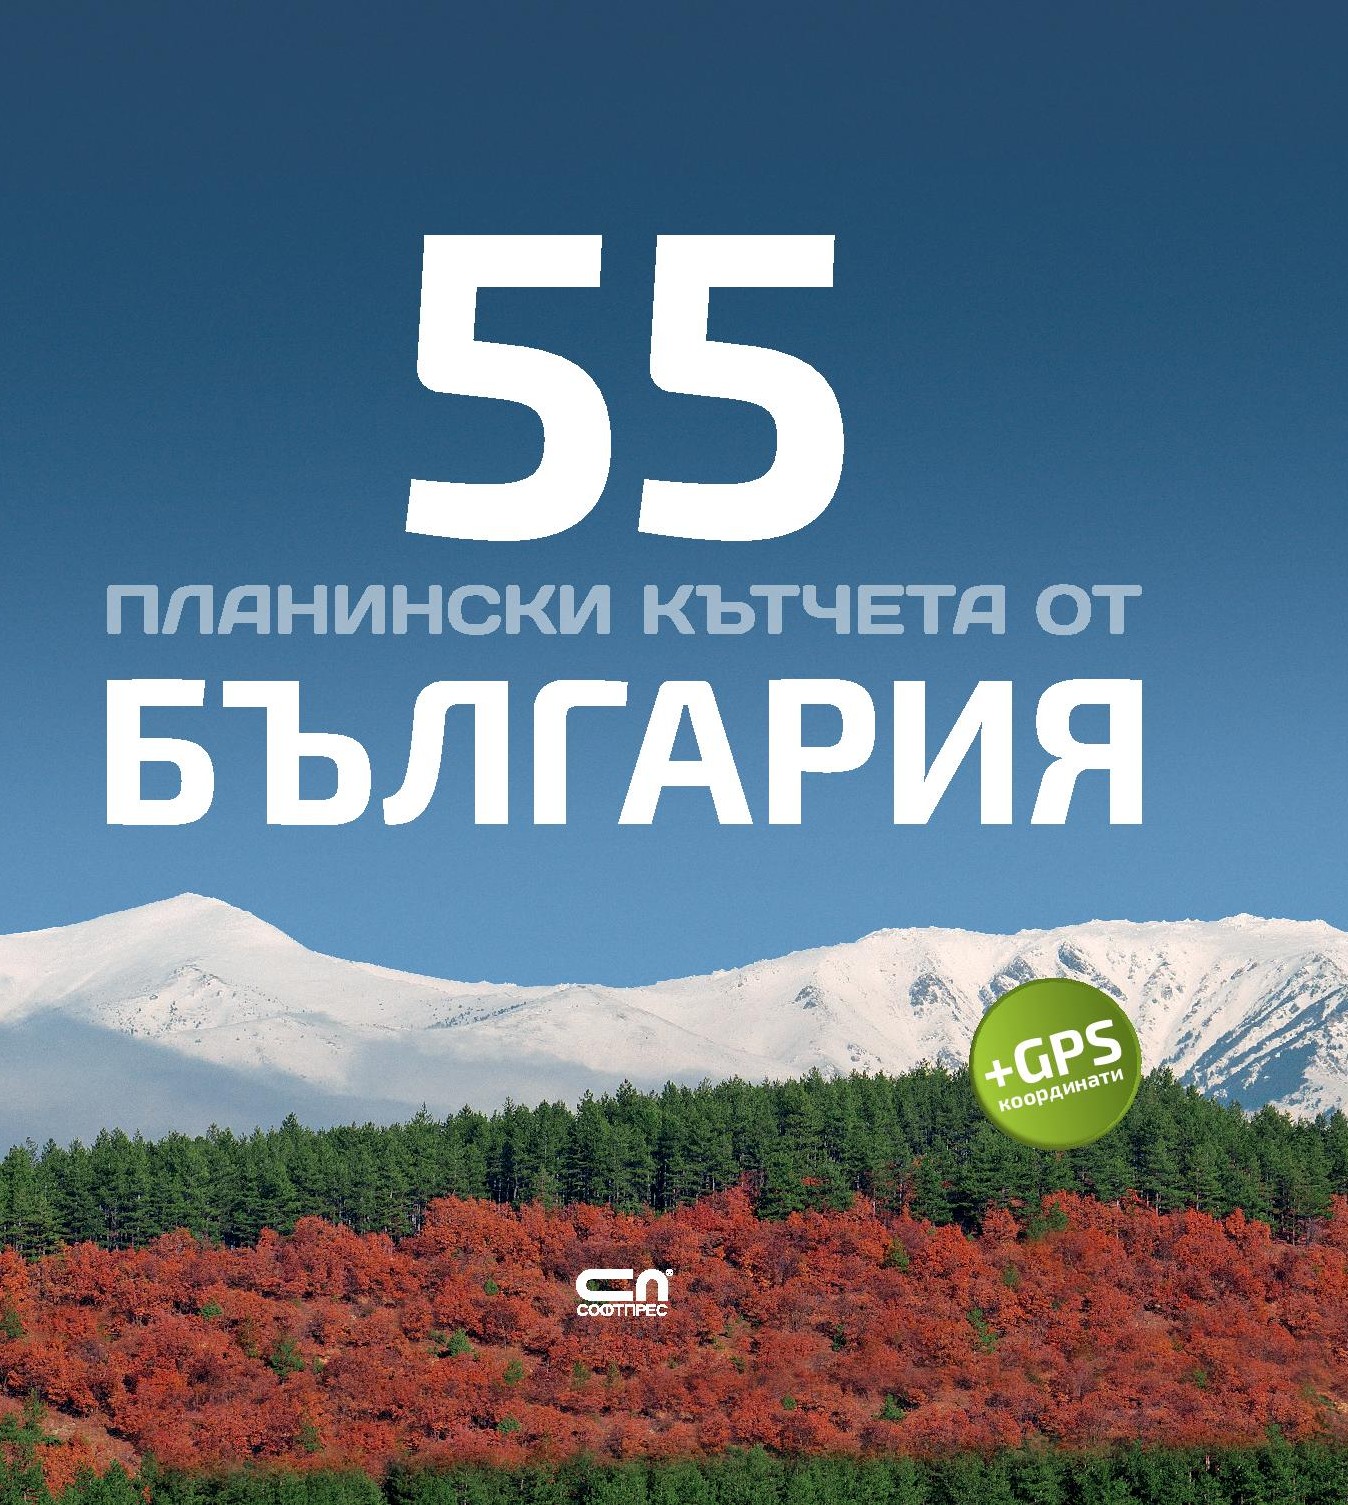 Радослав Донев: "55 планински кътчета от България"